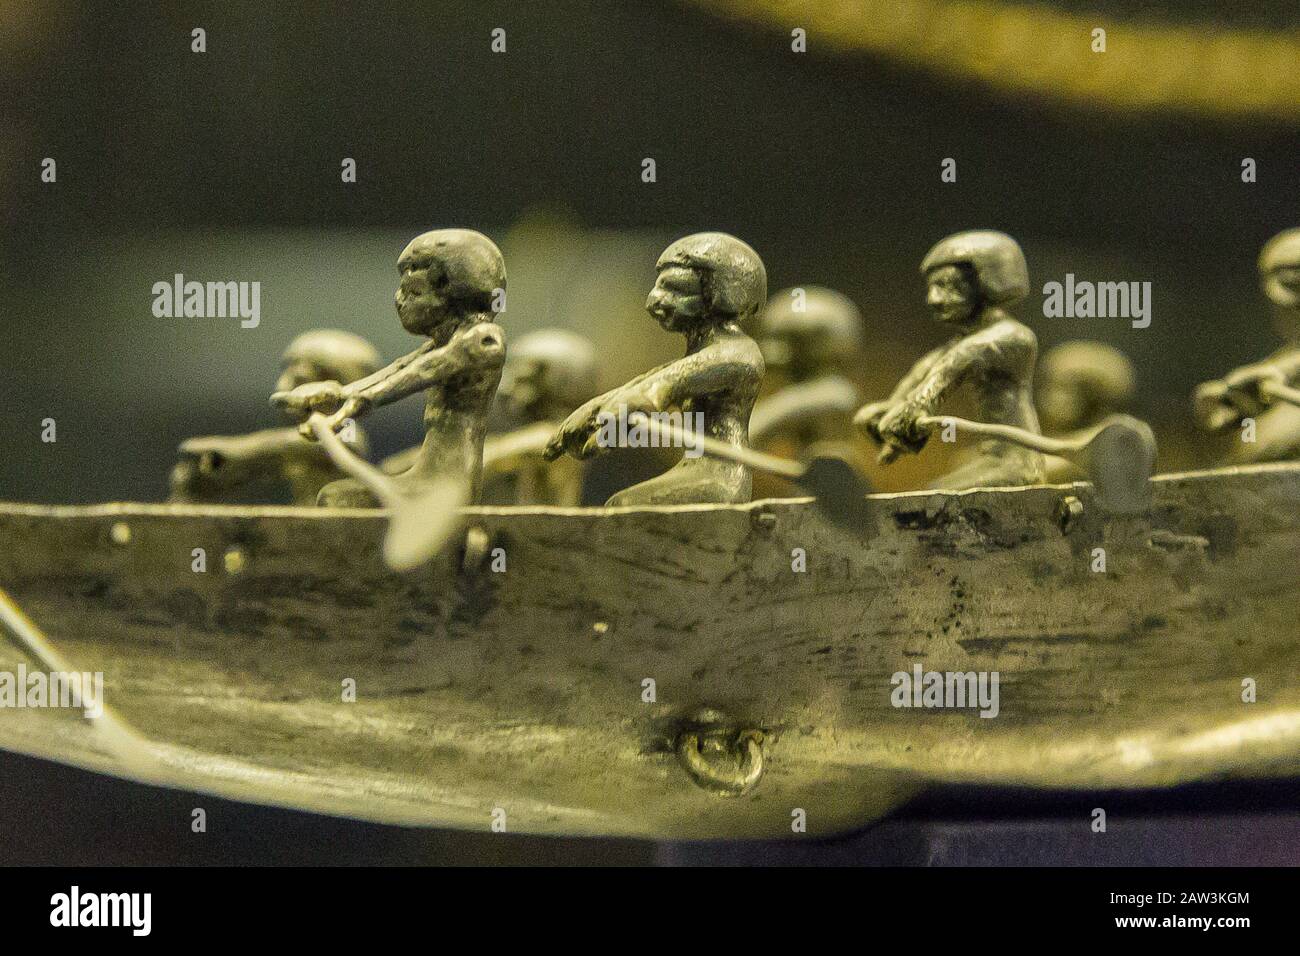 Egitto, Cairo, Museo Egizio, vogatori d'argento su una barca che si trova nella tomba della regina Ahhotep, la madre di Ahmosi, Dra Abu el Naga, Luxor. Foto Stock